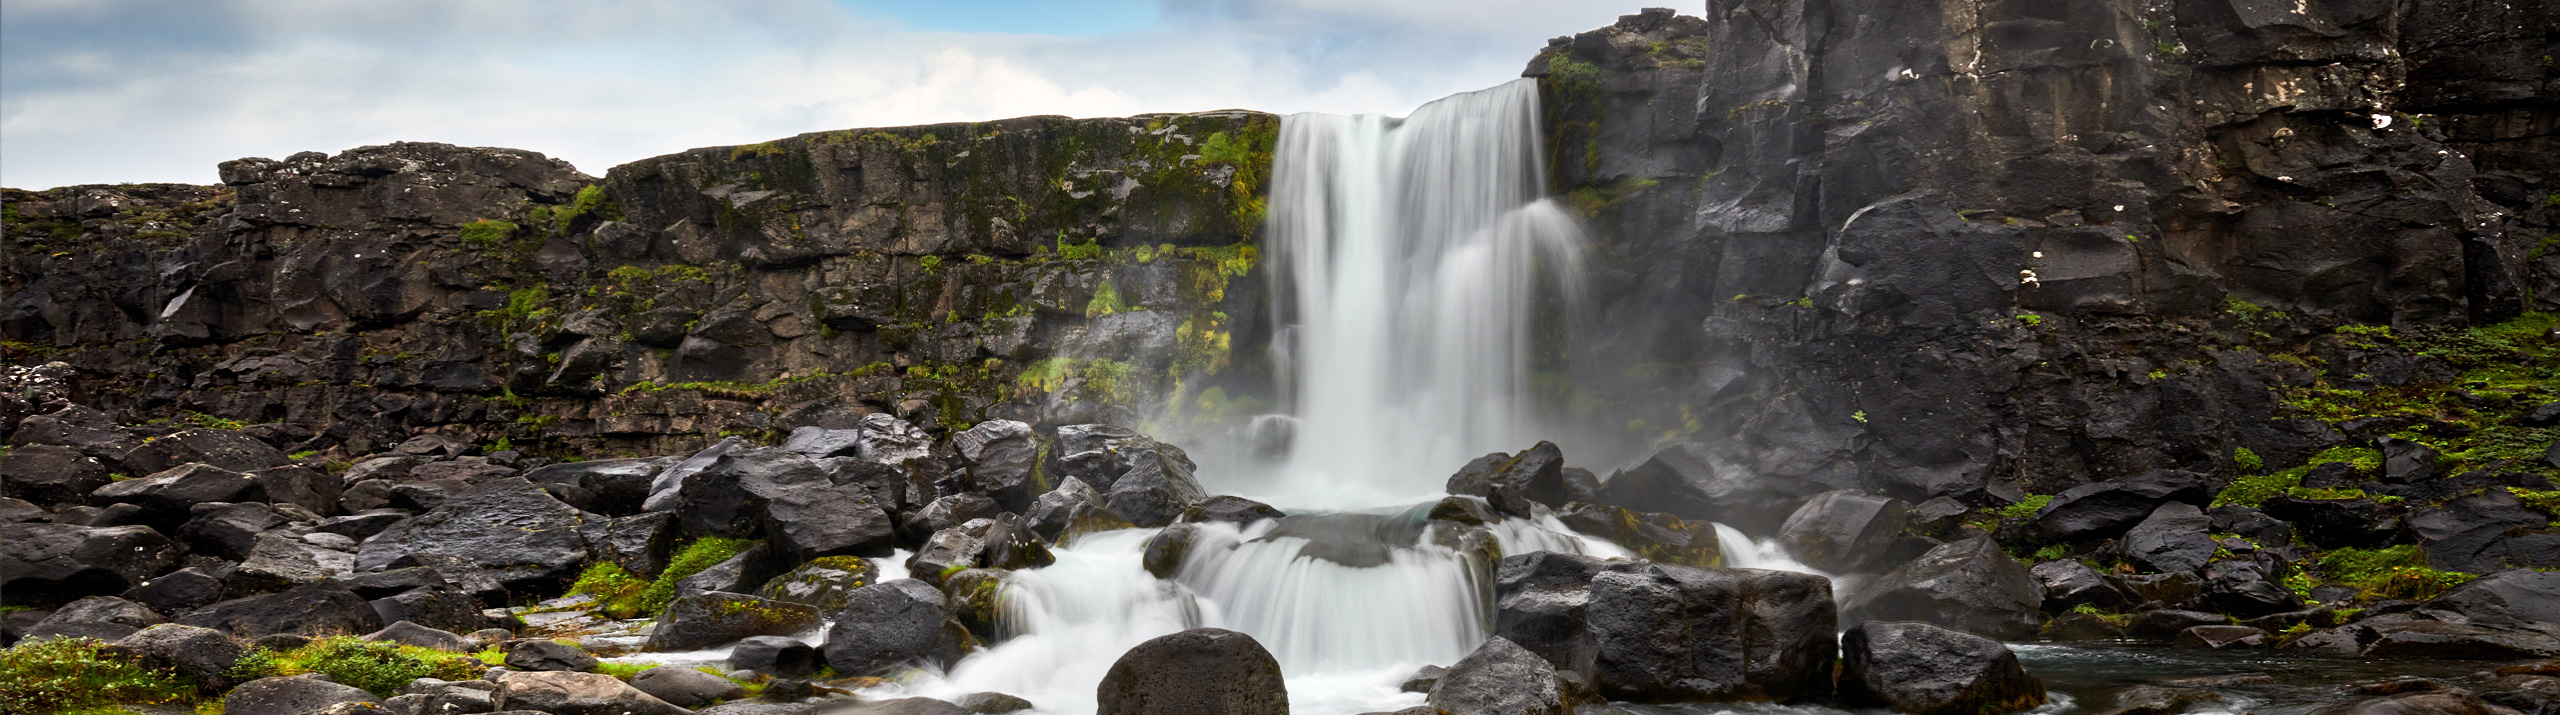 Öxarárfoss vandfaldet - vandfald i Island